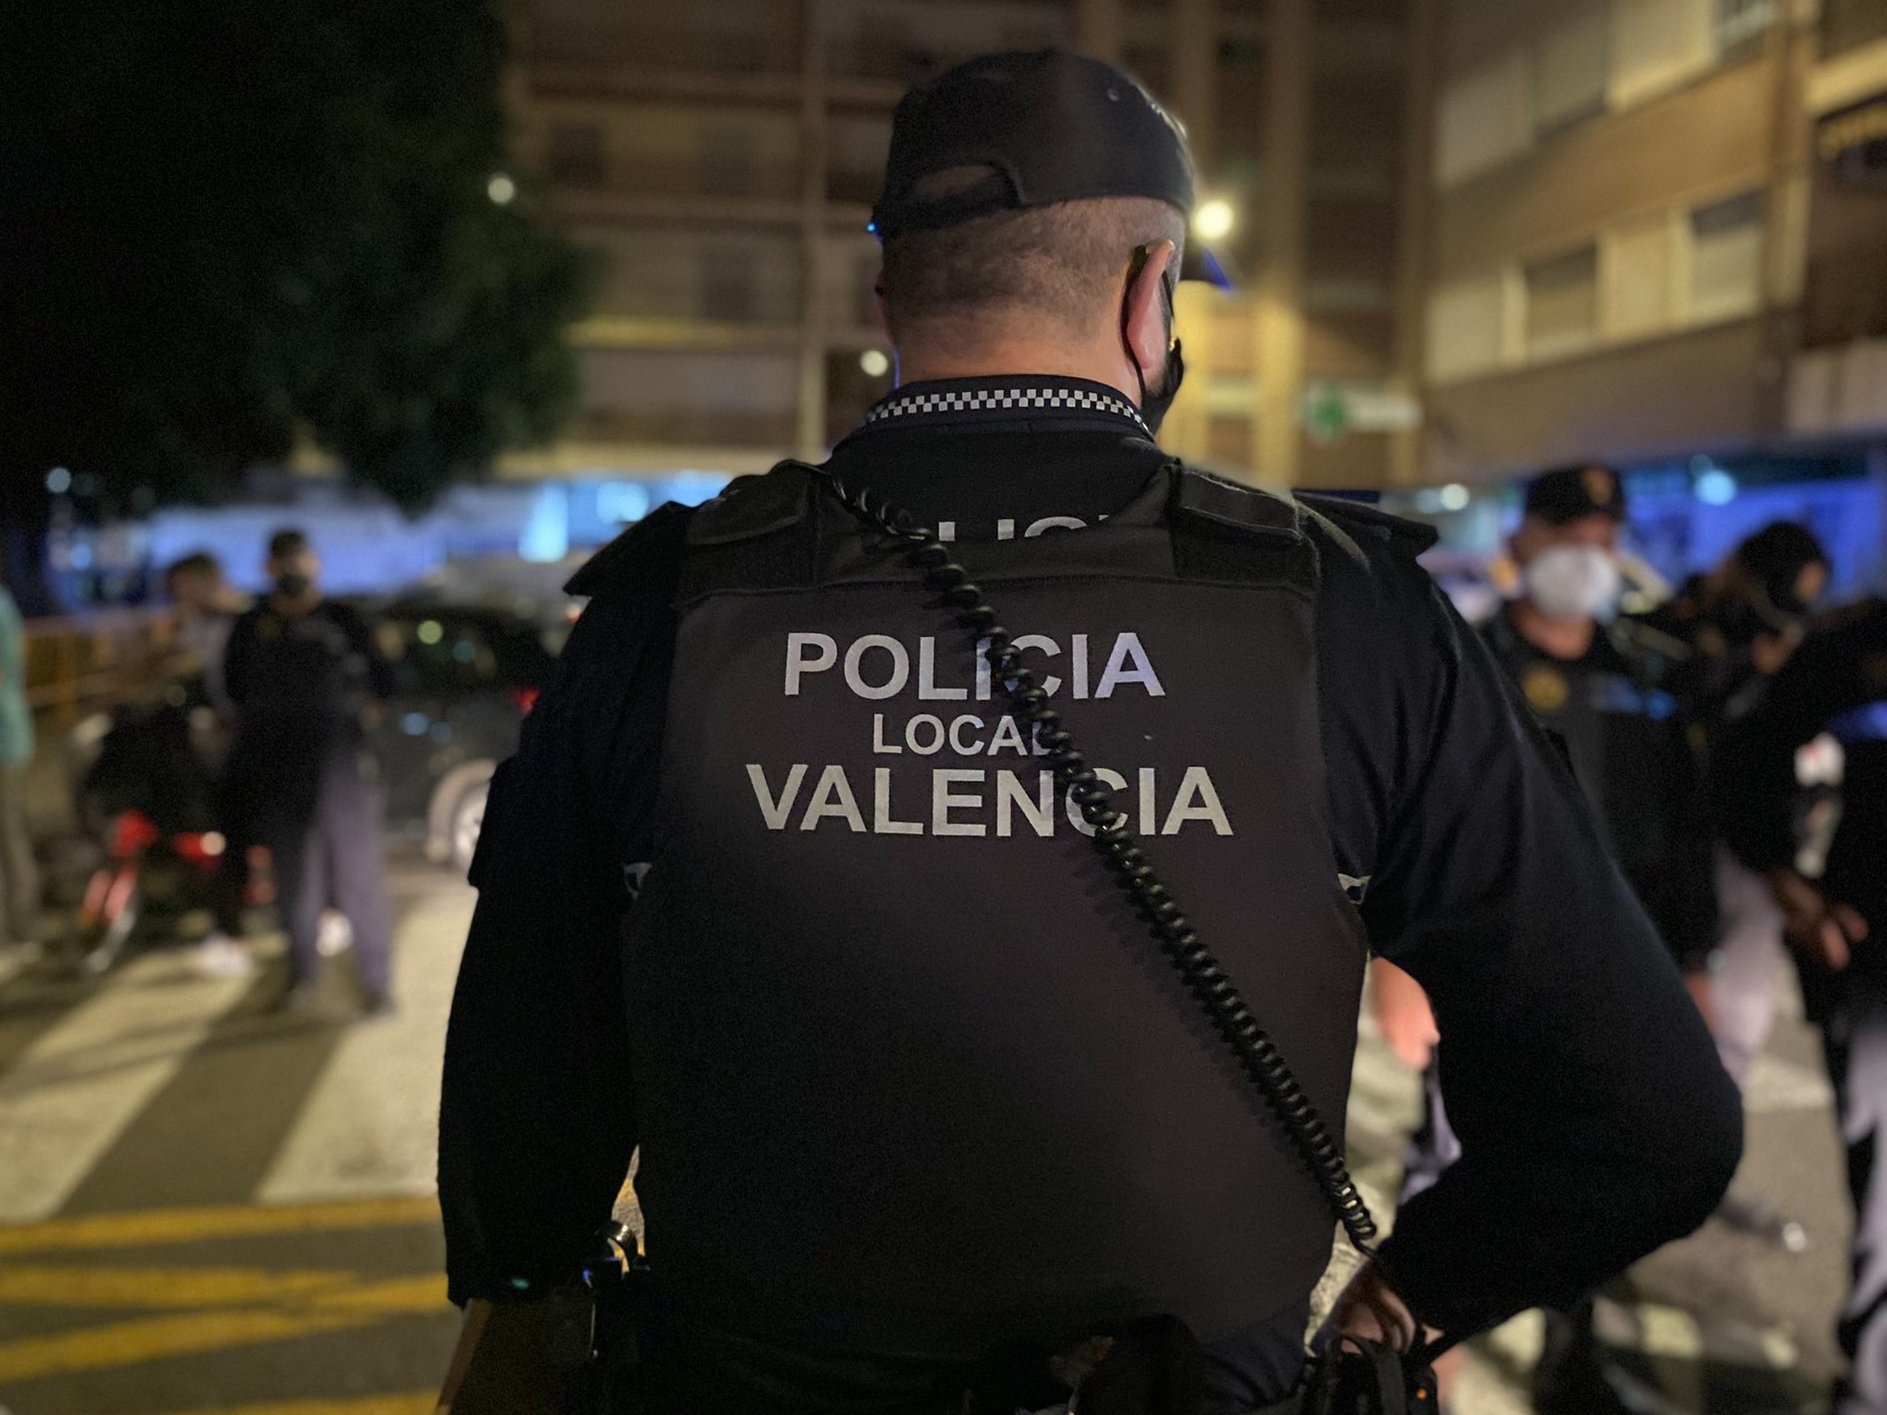 Police Valencia